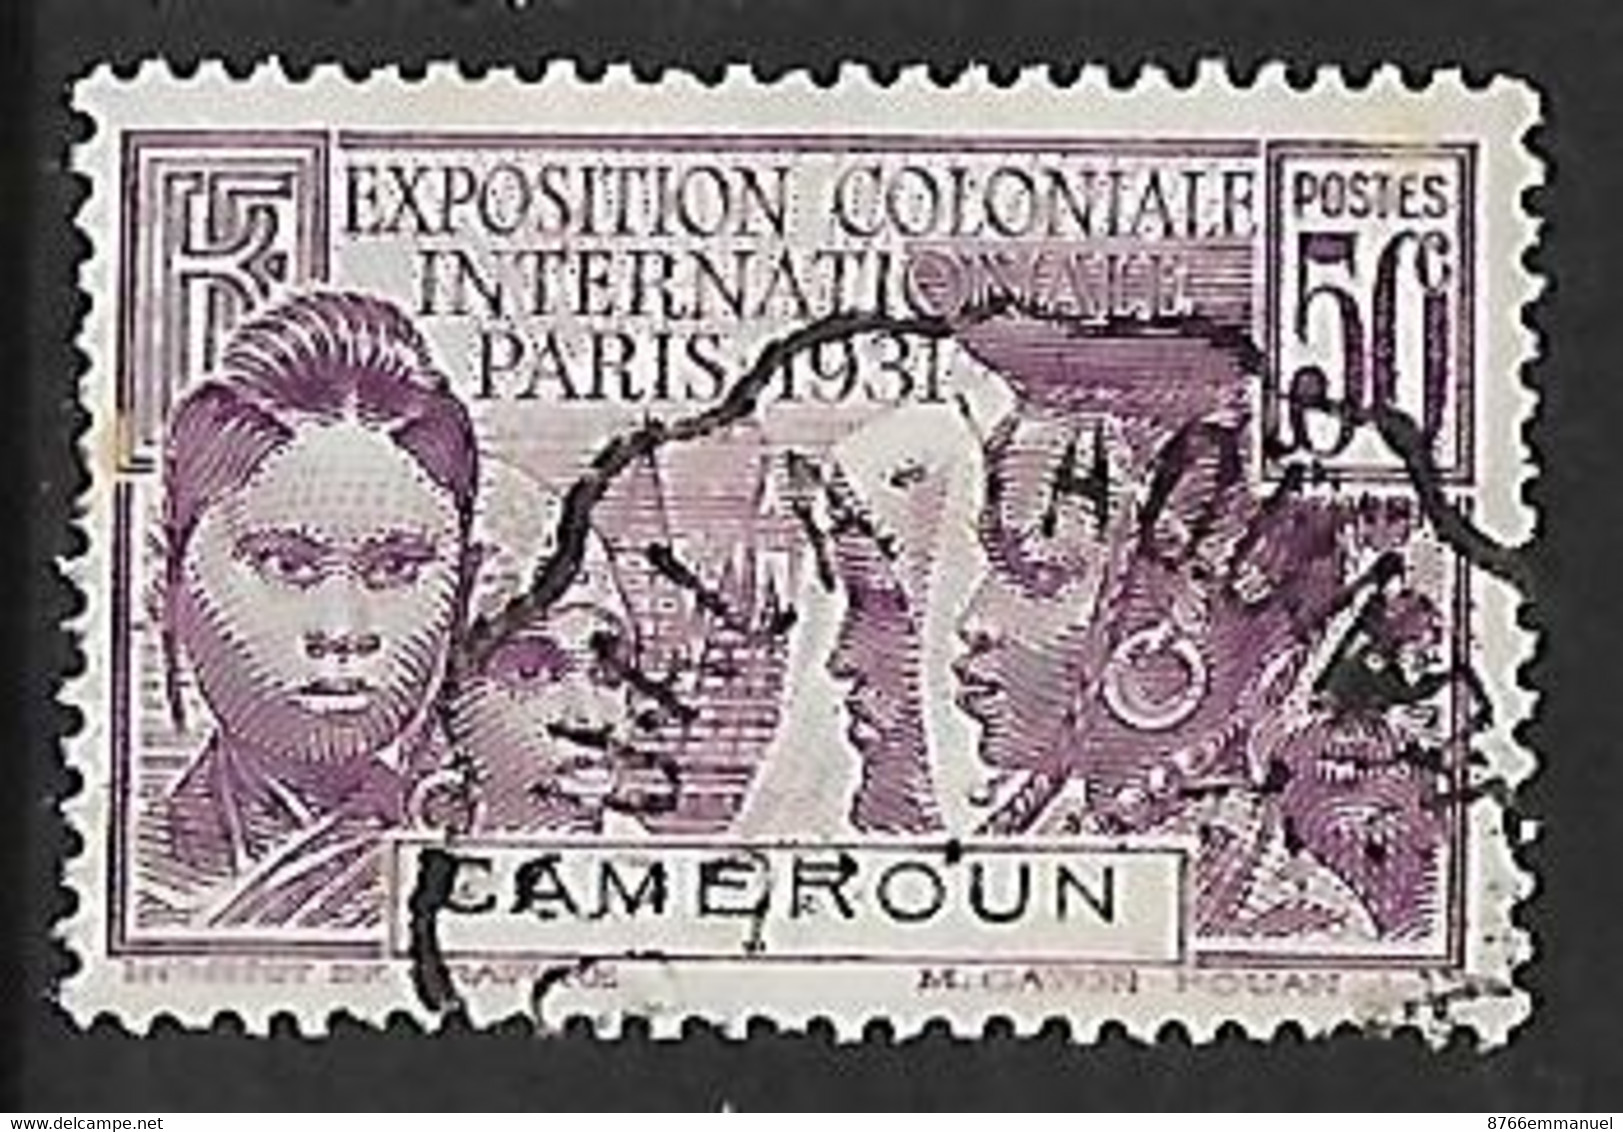 CAMEROUN N°150  Oblitération De Convoyeur Douala-Yaoundé - Used Stamps